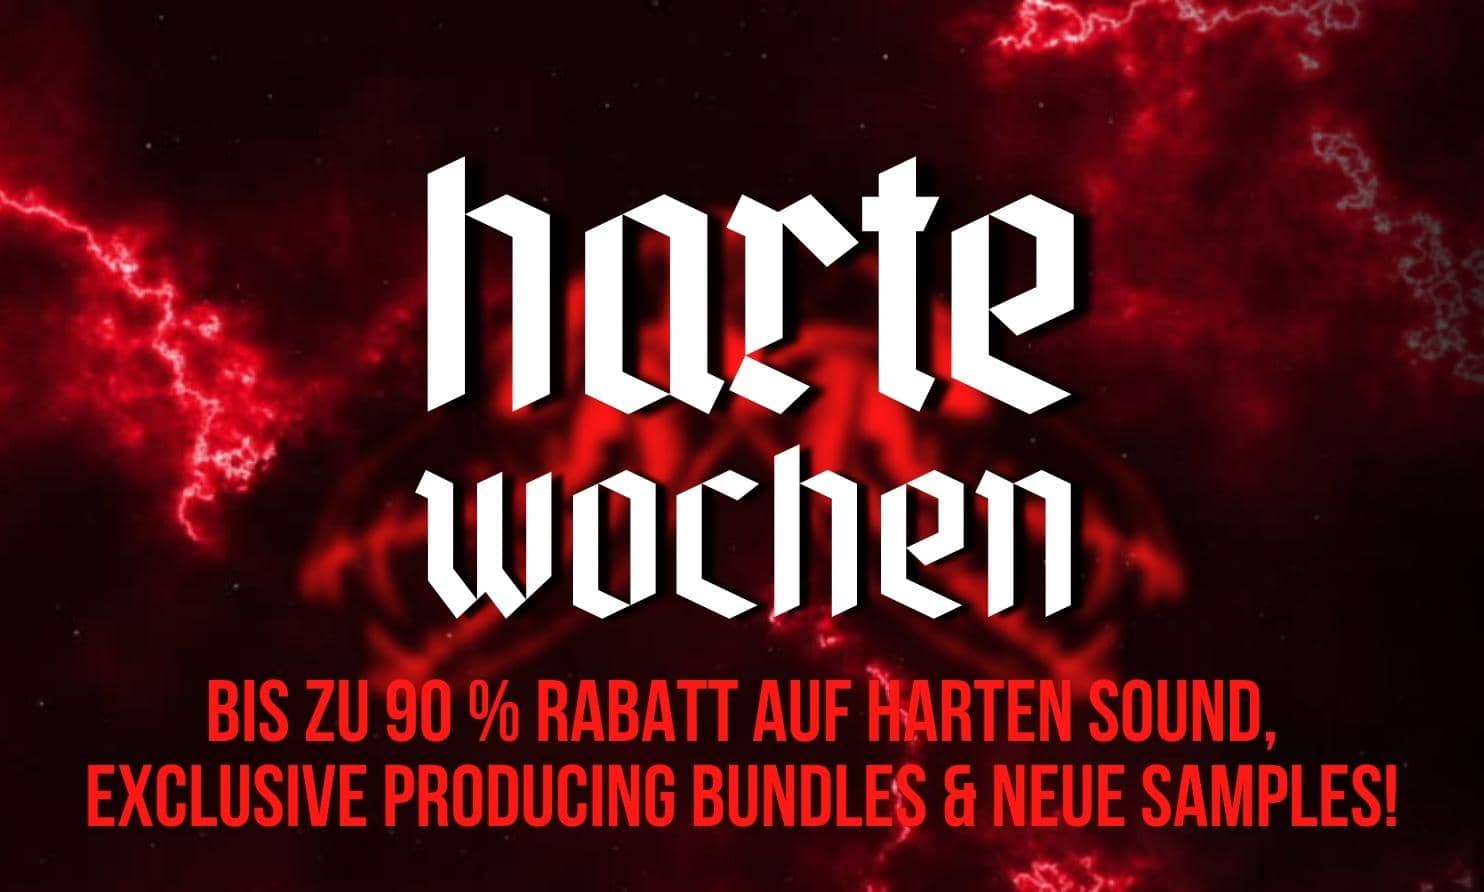 Harte Wochen auf SINEE.de! Bis zu 90 % Rabatt, exklusive Bundles & neue Hard Techno Samples!